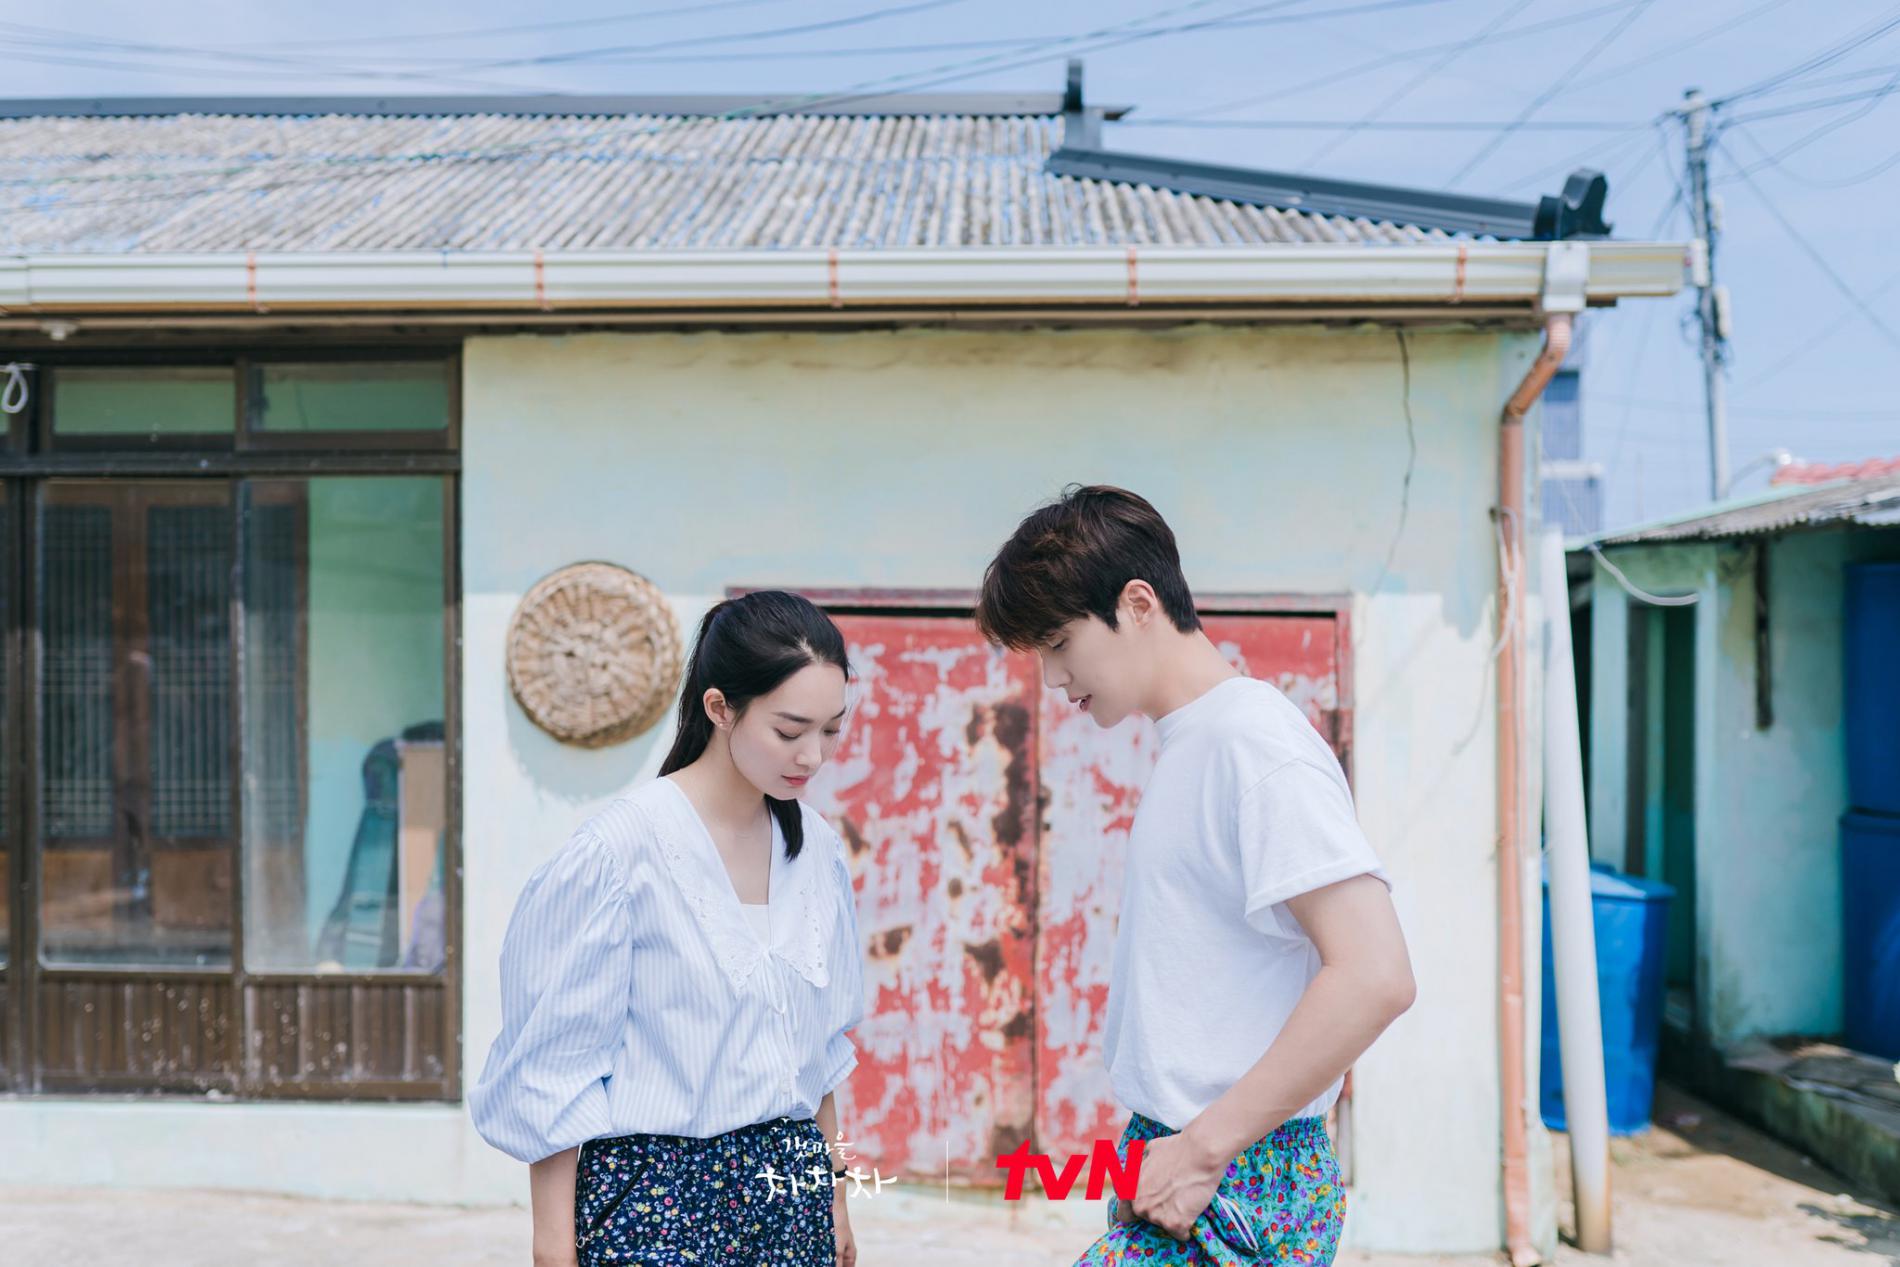 Drama Korea Hometown Cha Cha Cha Episode 7 Sub Indo, Hadirnya Orang Ketiga